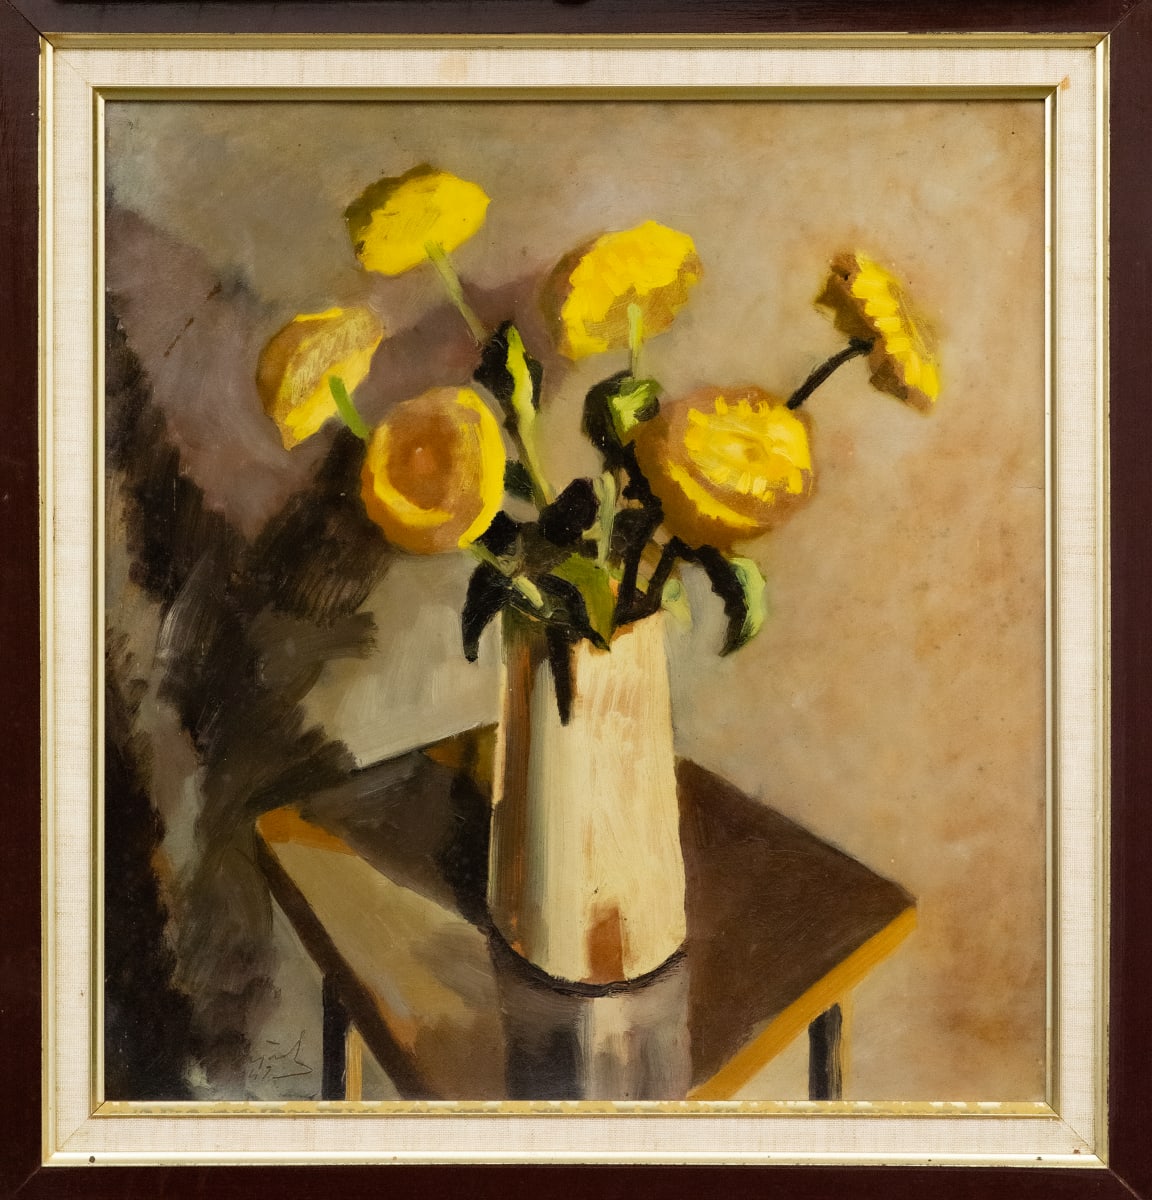 November Gleam (Chrysanthemum Golden Hammer)  (Alternate tile: November Dream, Marigolds) by Michael Lester  Image: Recto
